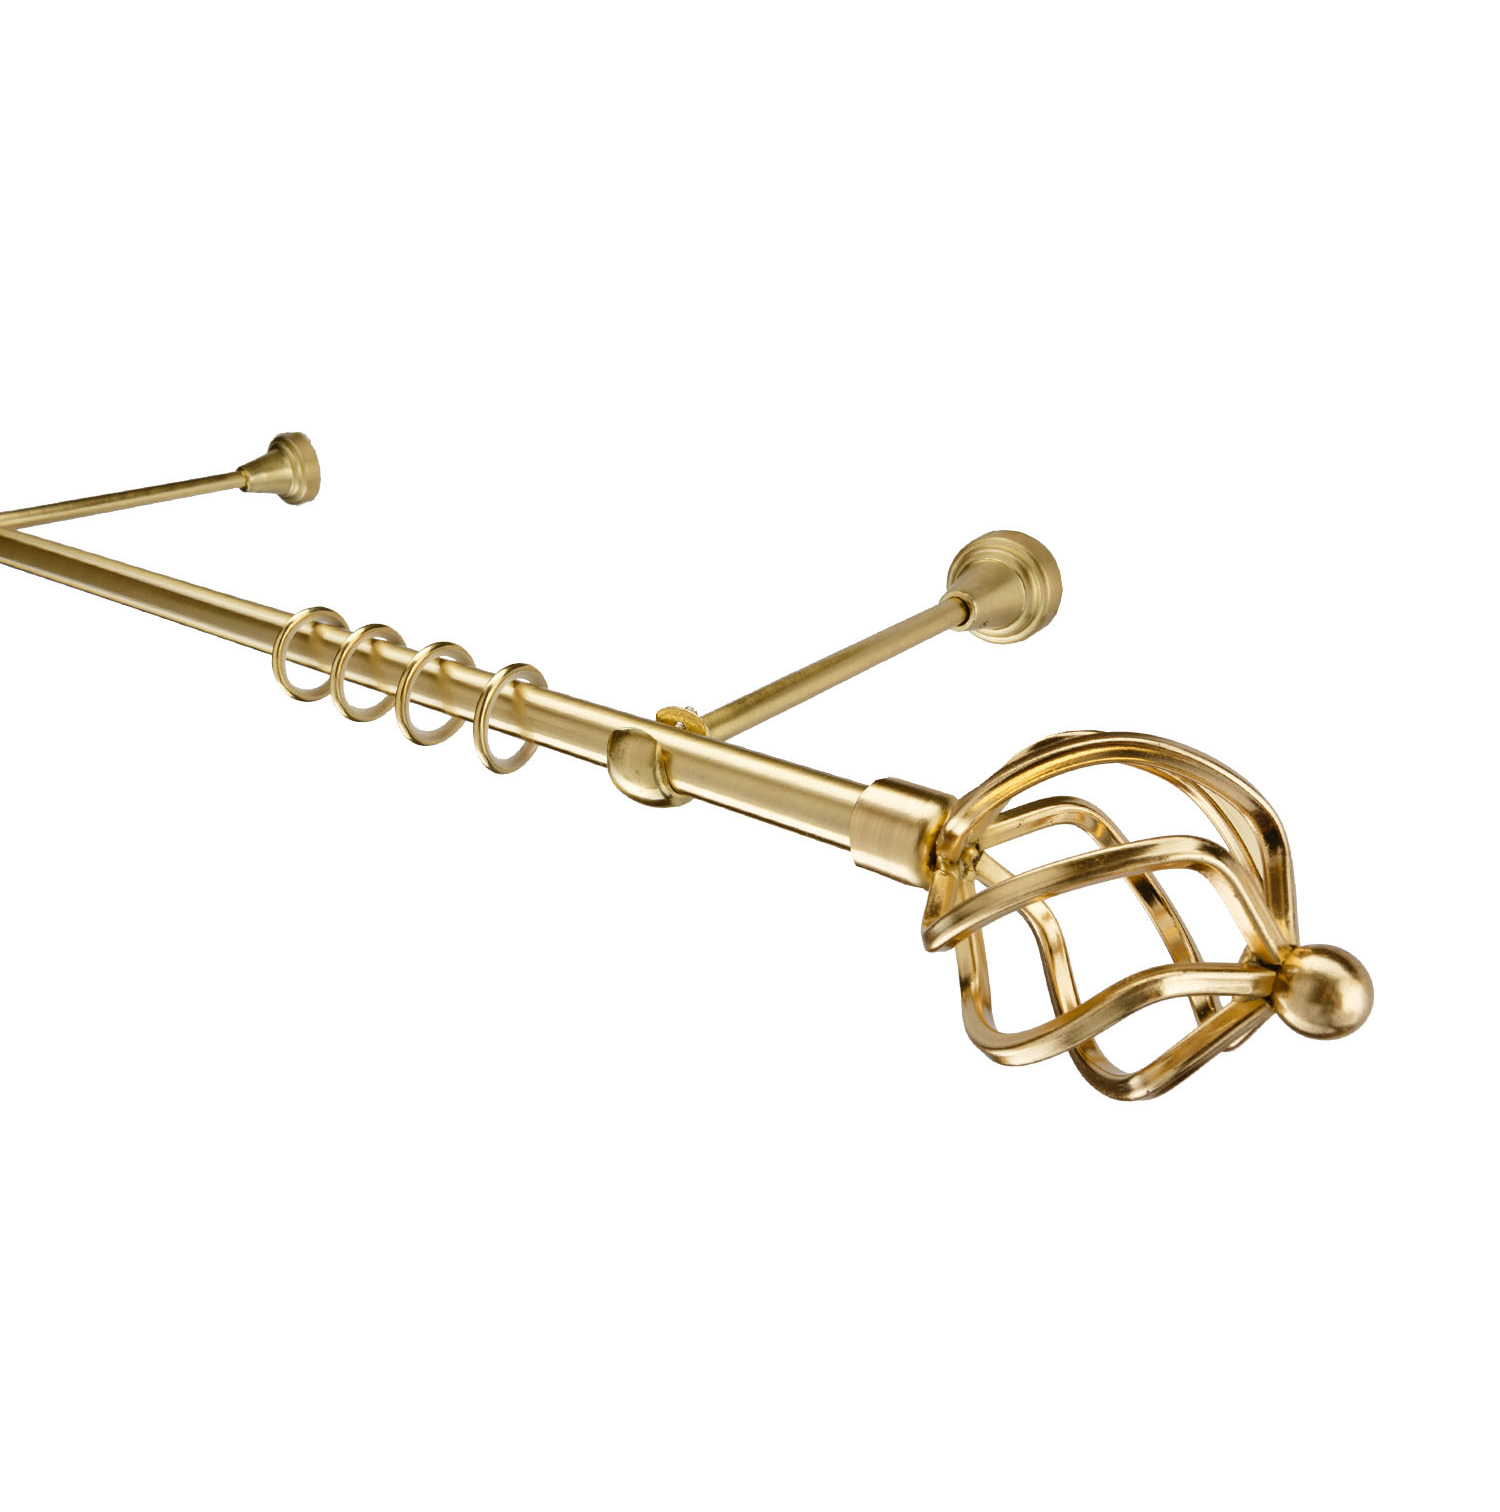 Металлический карниз для штор Солярис, однорядный 16 мм, золото, гладкая штанга, длина 160 см